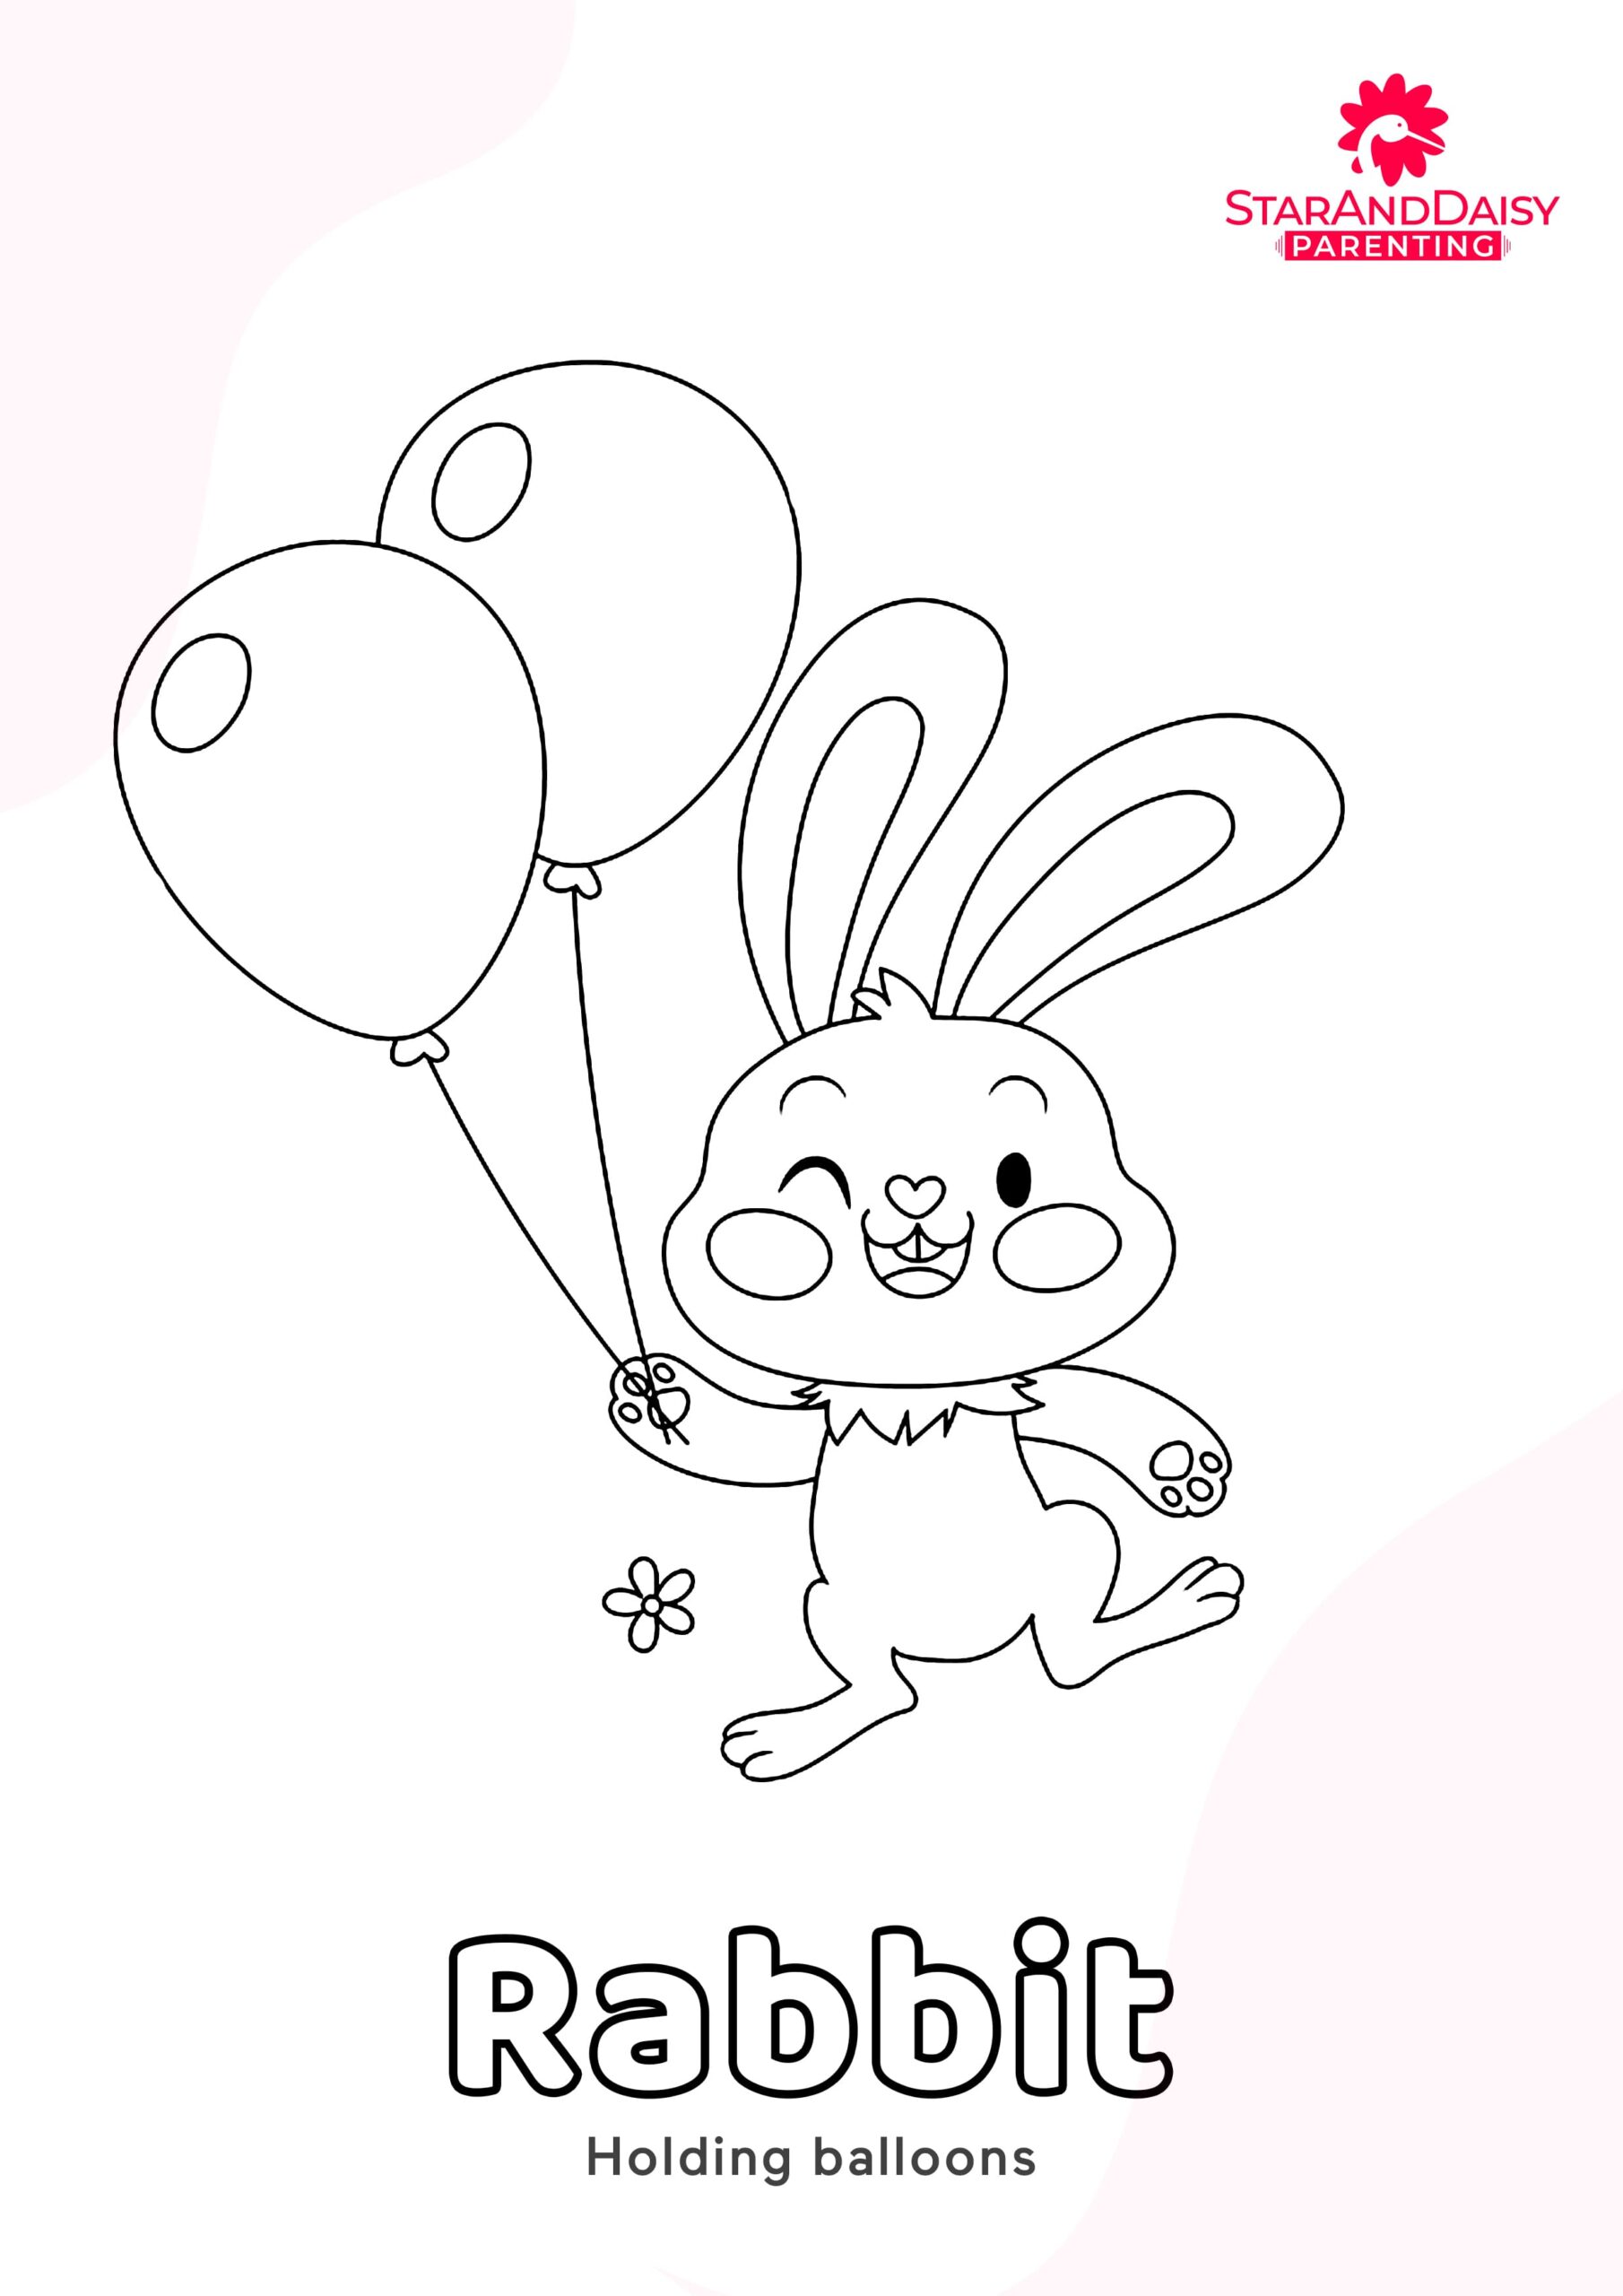 Rabbit-4